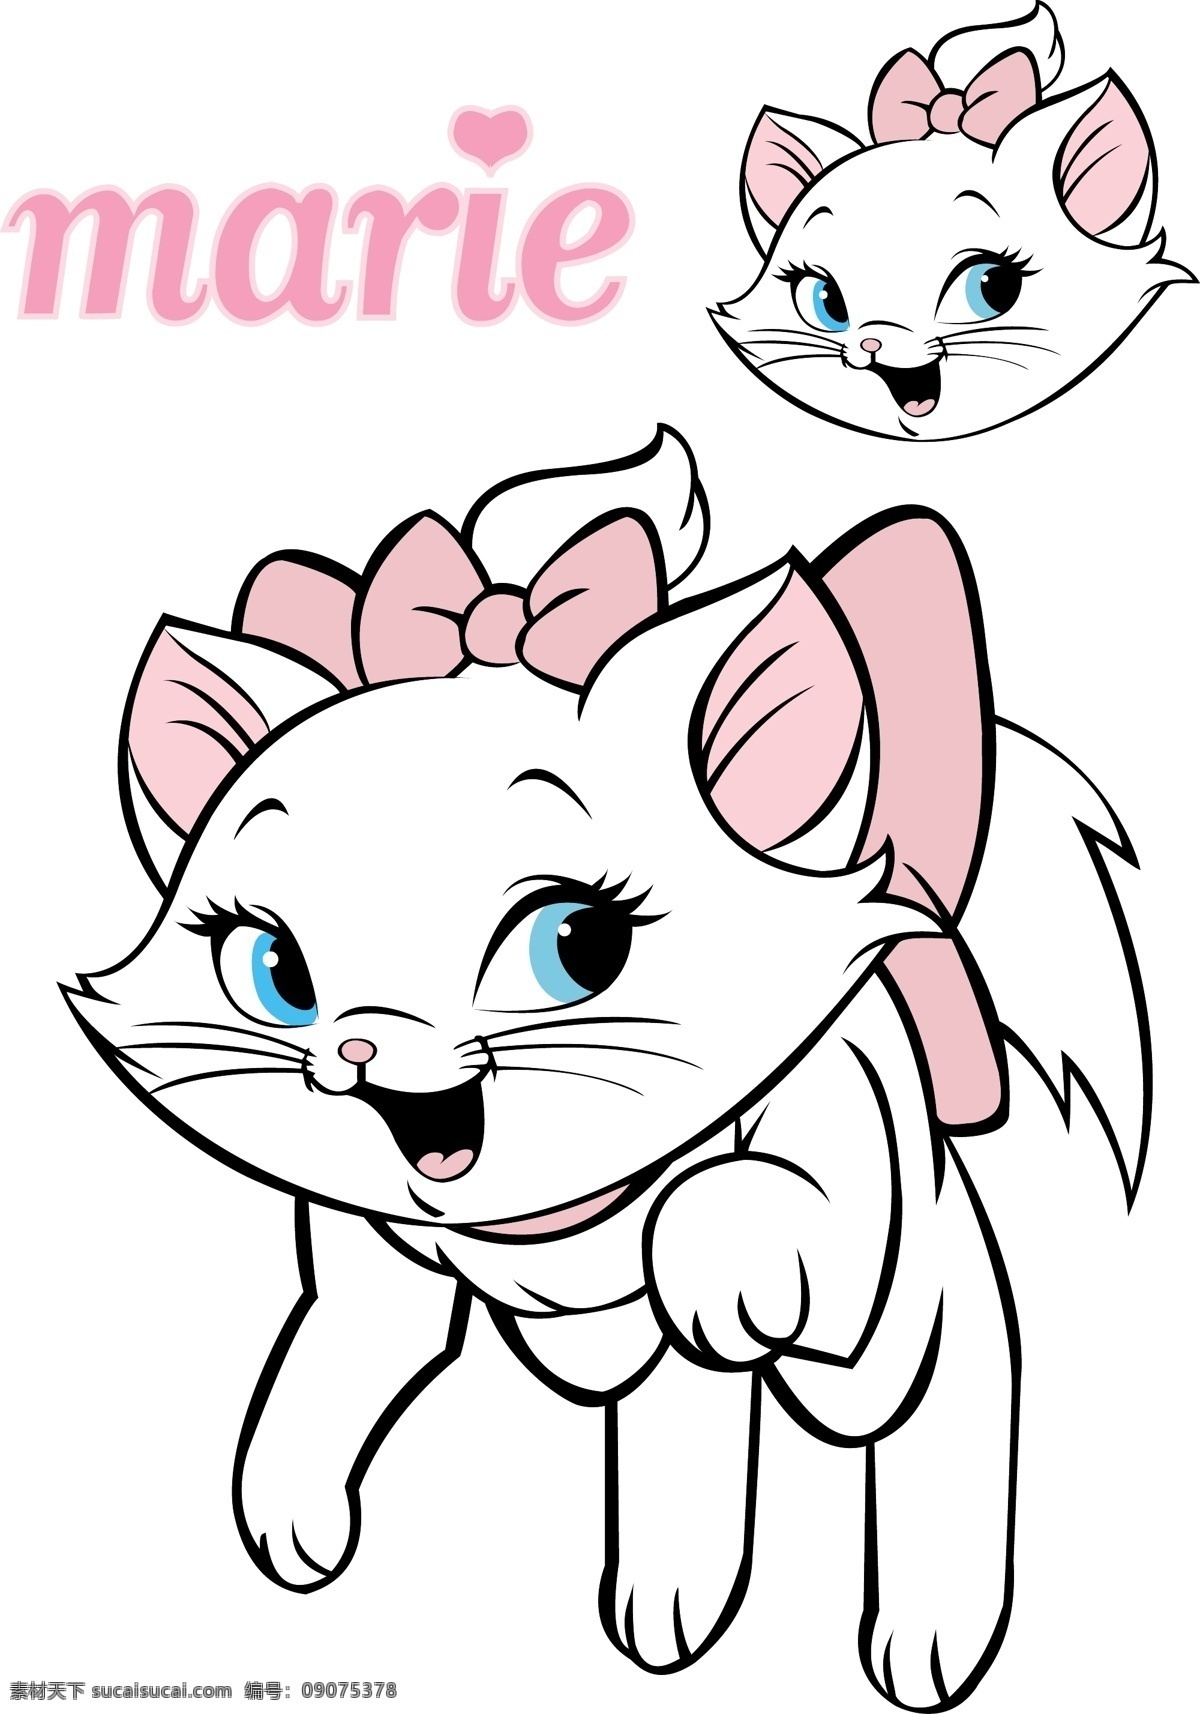 玛莉猫 格式 迪斯尼 中 的卡 通 人物 生物世界 家禽家畜 矢量图库